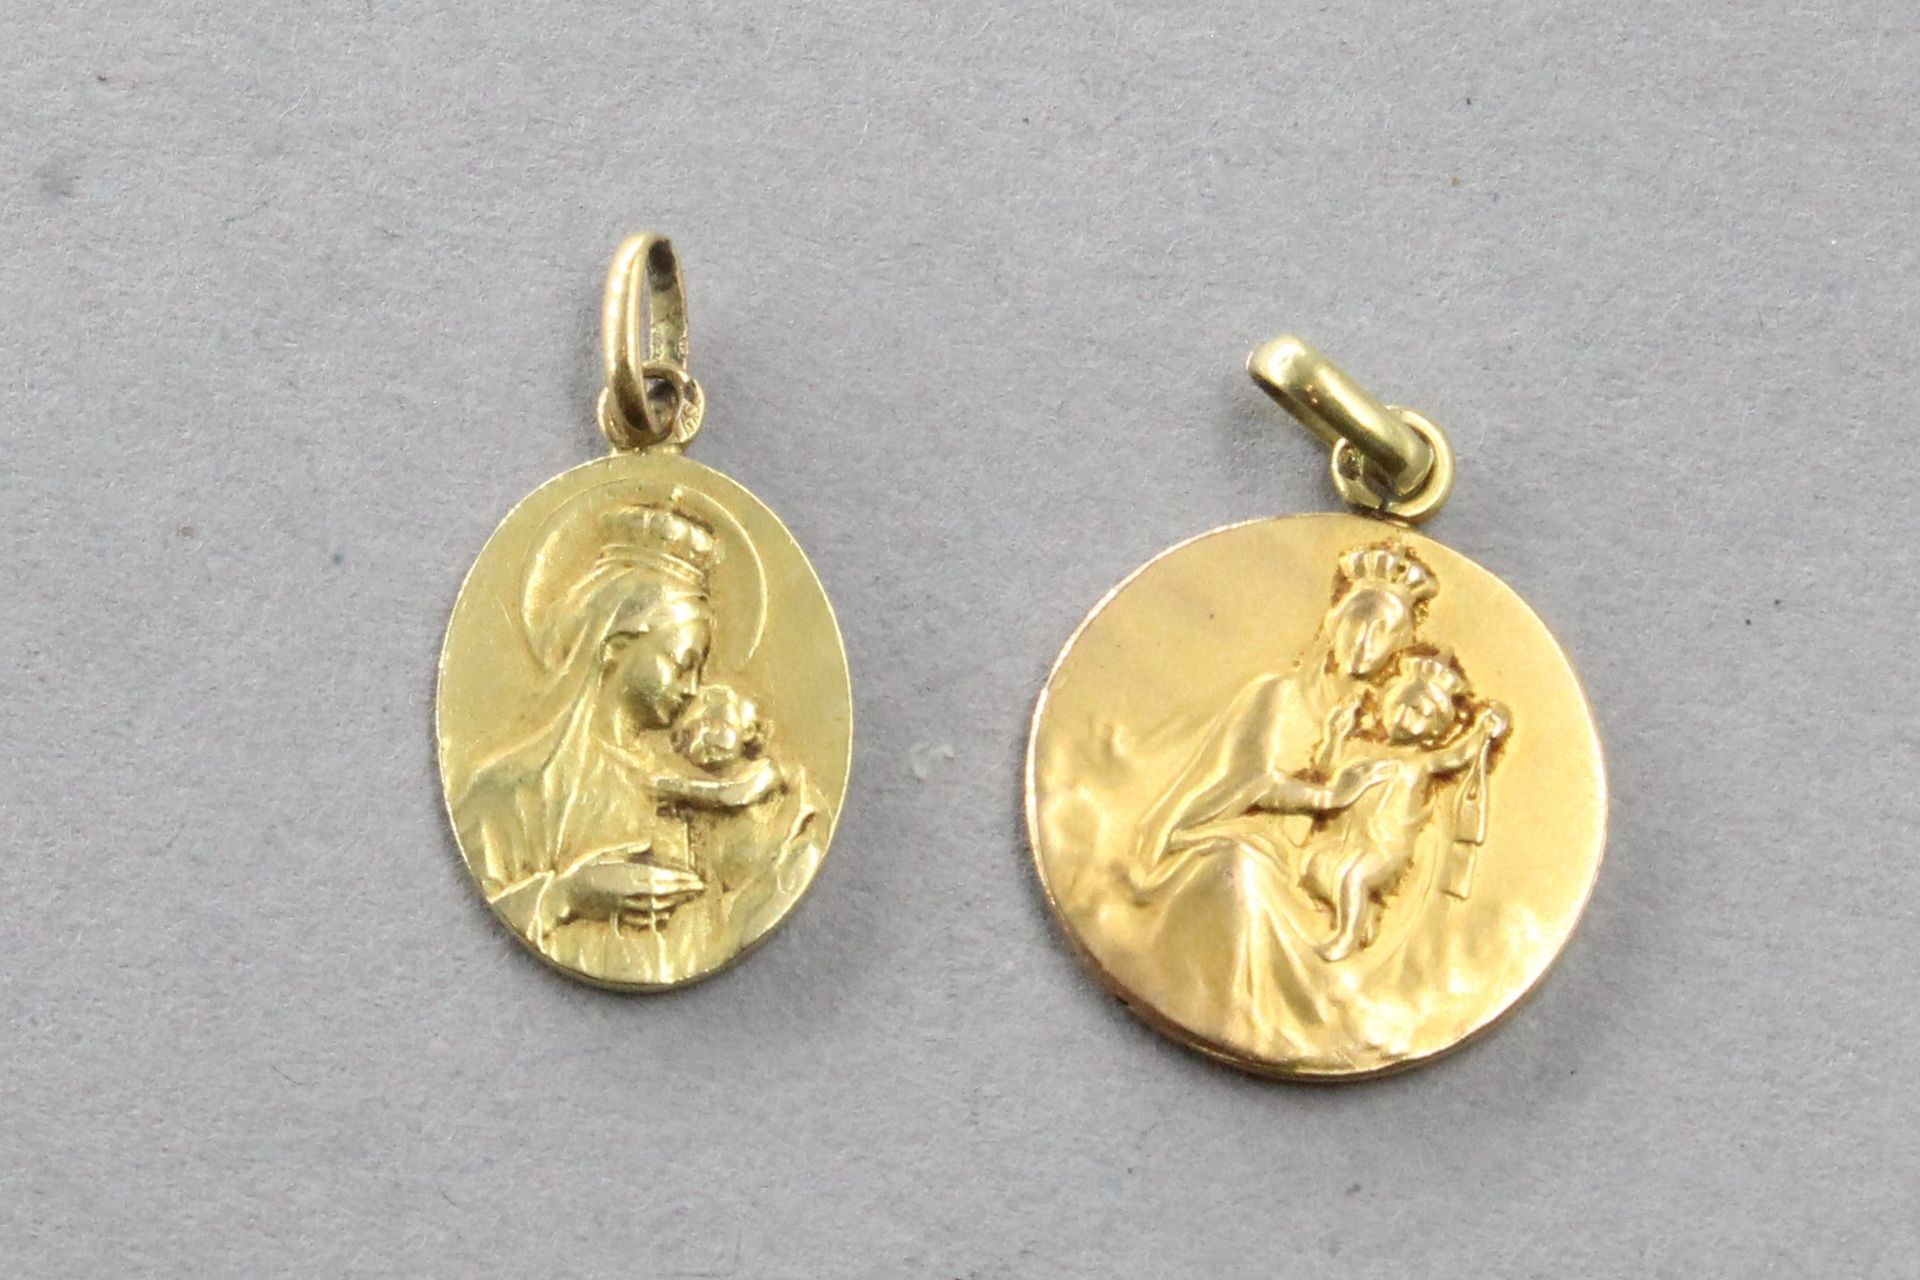 Null Dos medallas religiosas en oro amarillo de 18k (750).

Peso : 2,50 g.